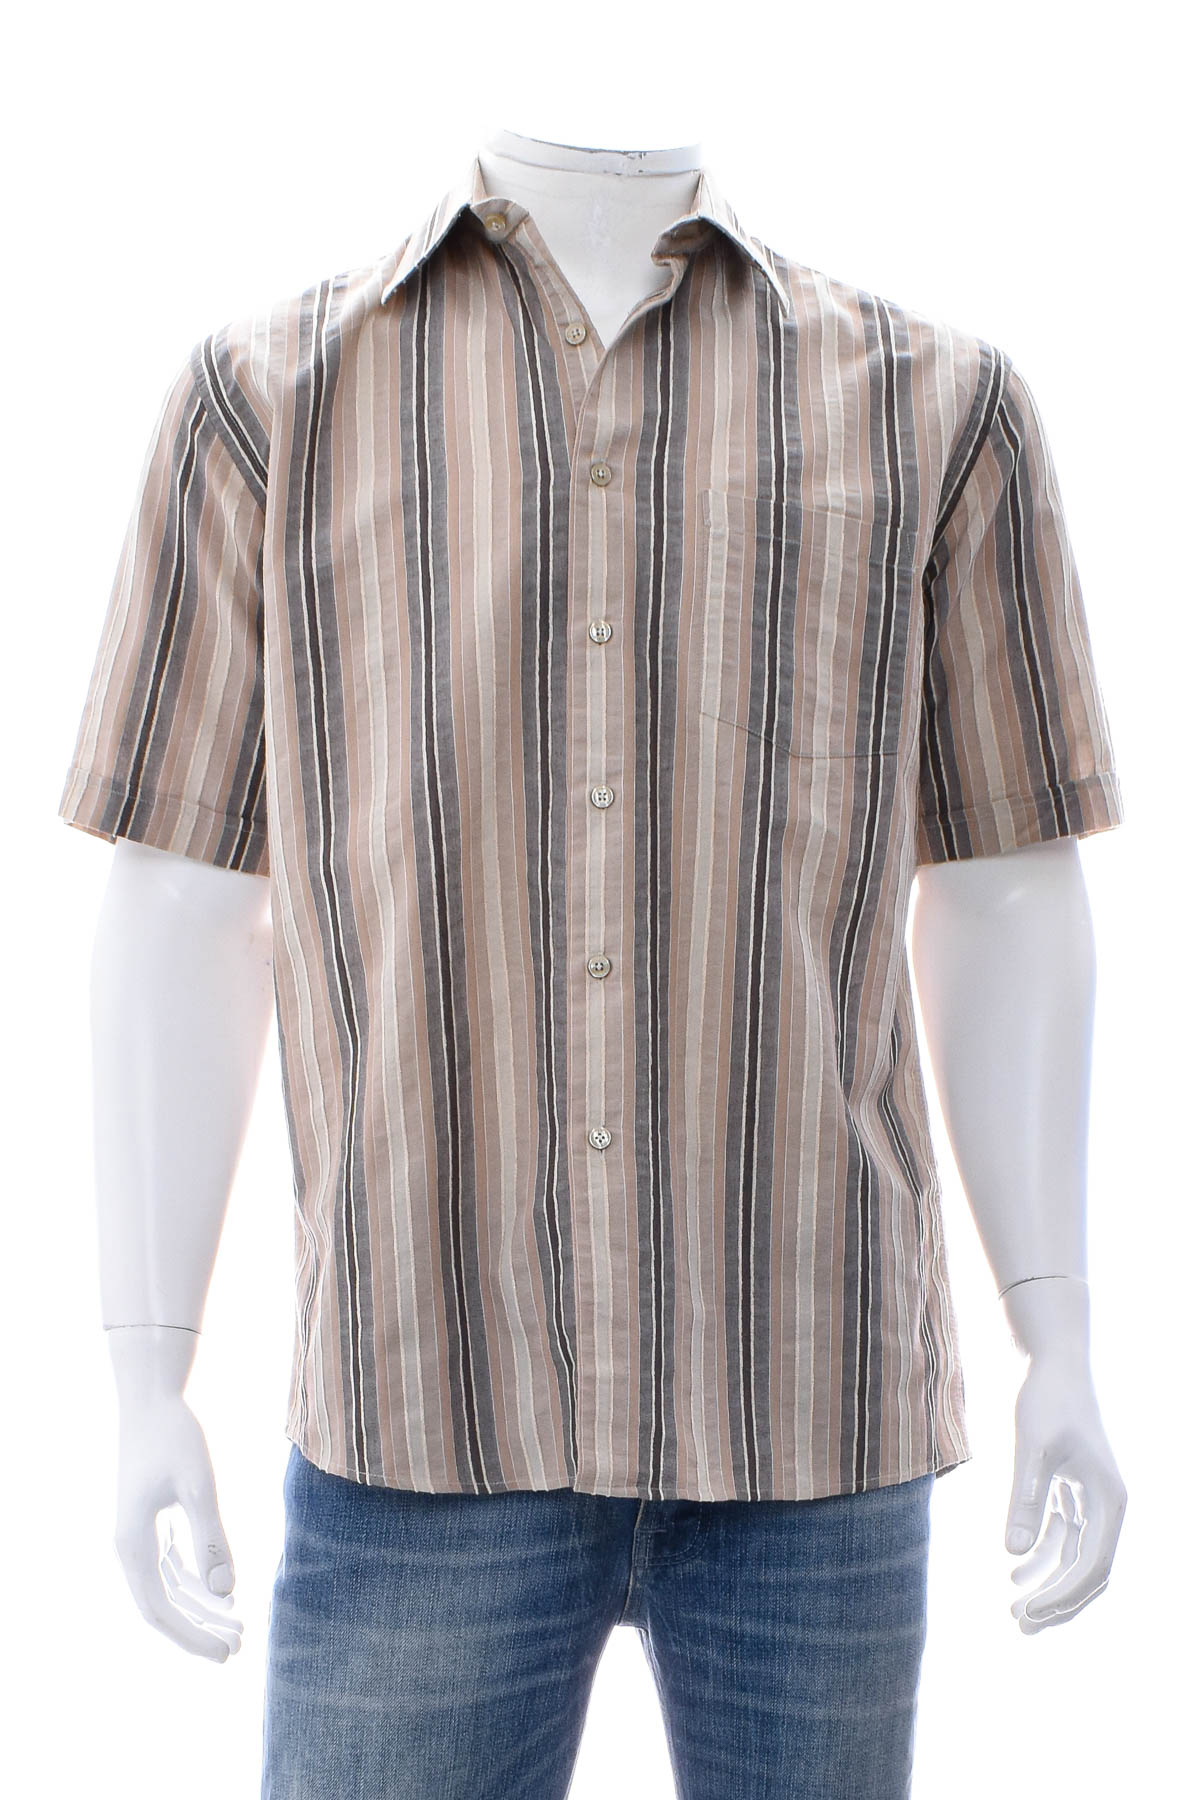 Ανδρικό πουκάμισο - Dubbin & Hollinshead - 0